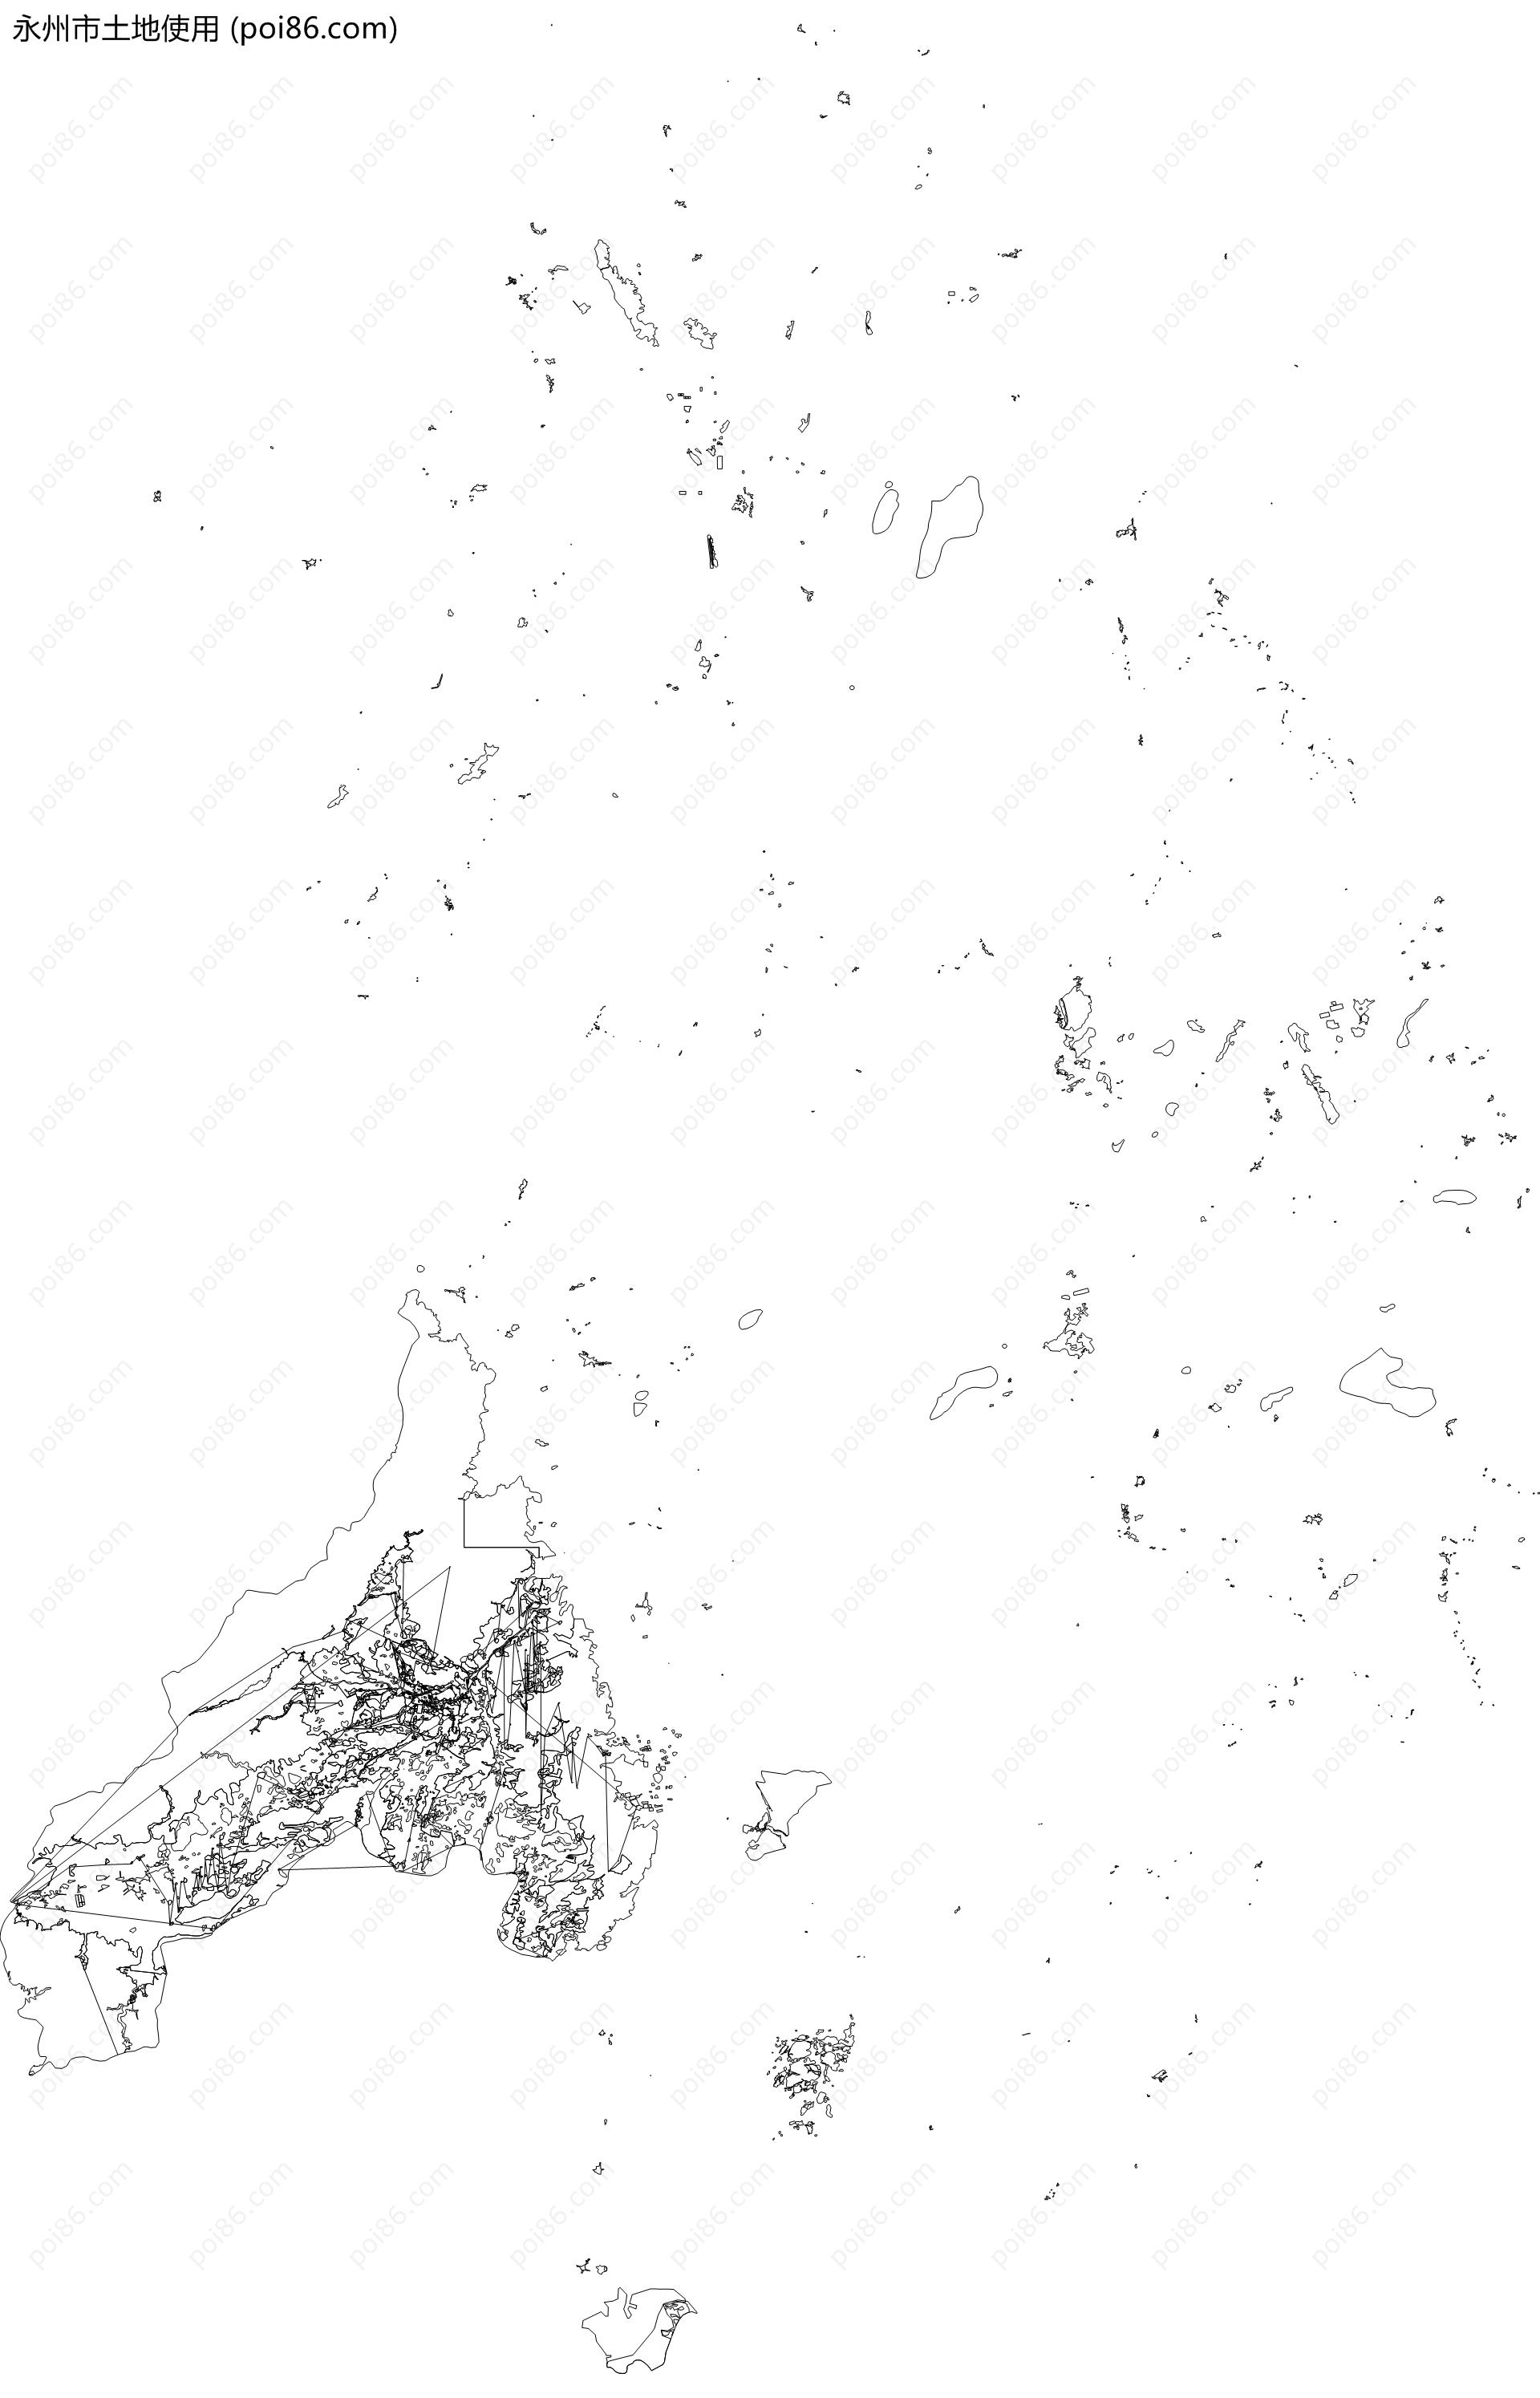 永州市土地使用地图